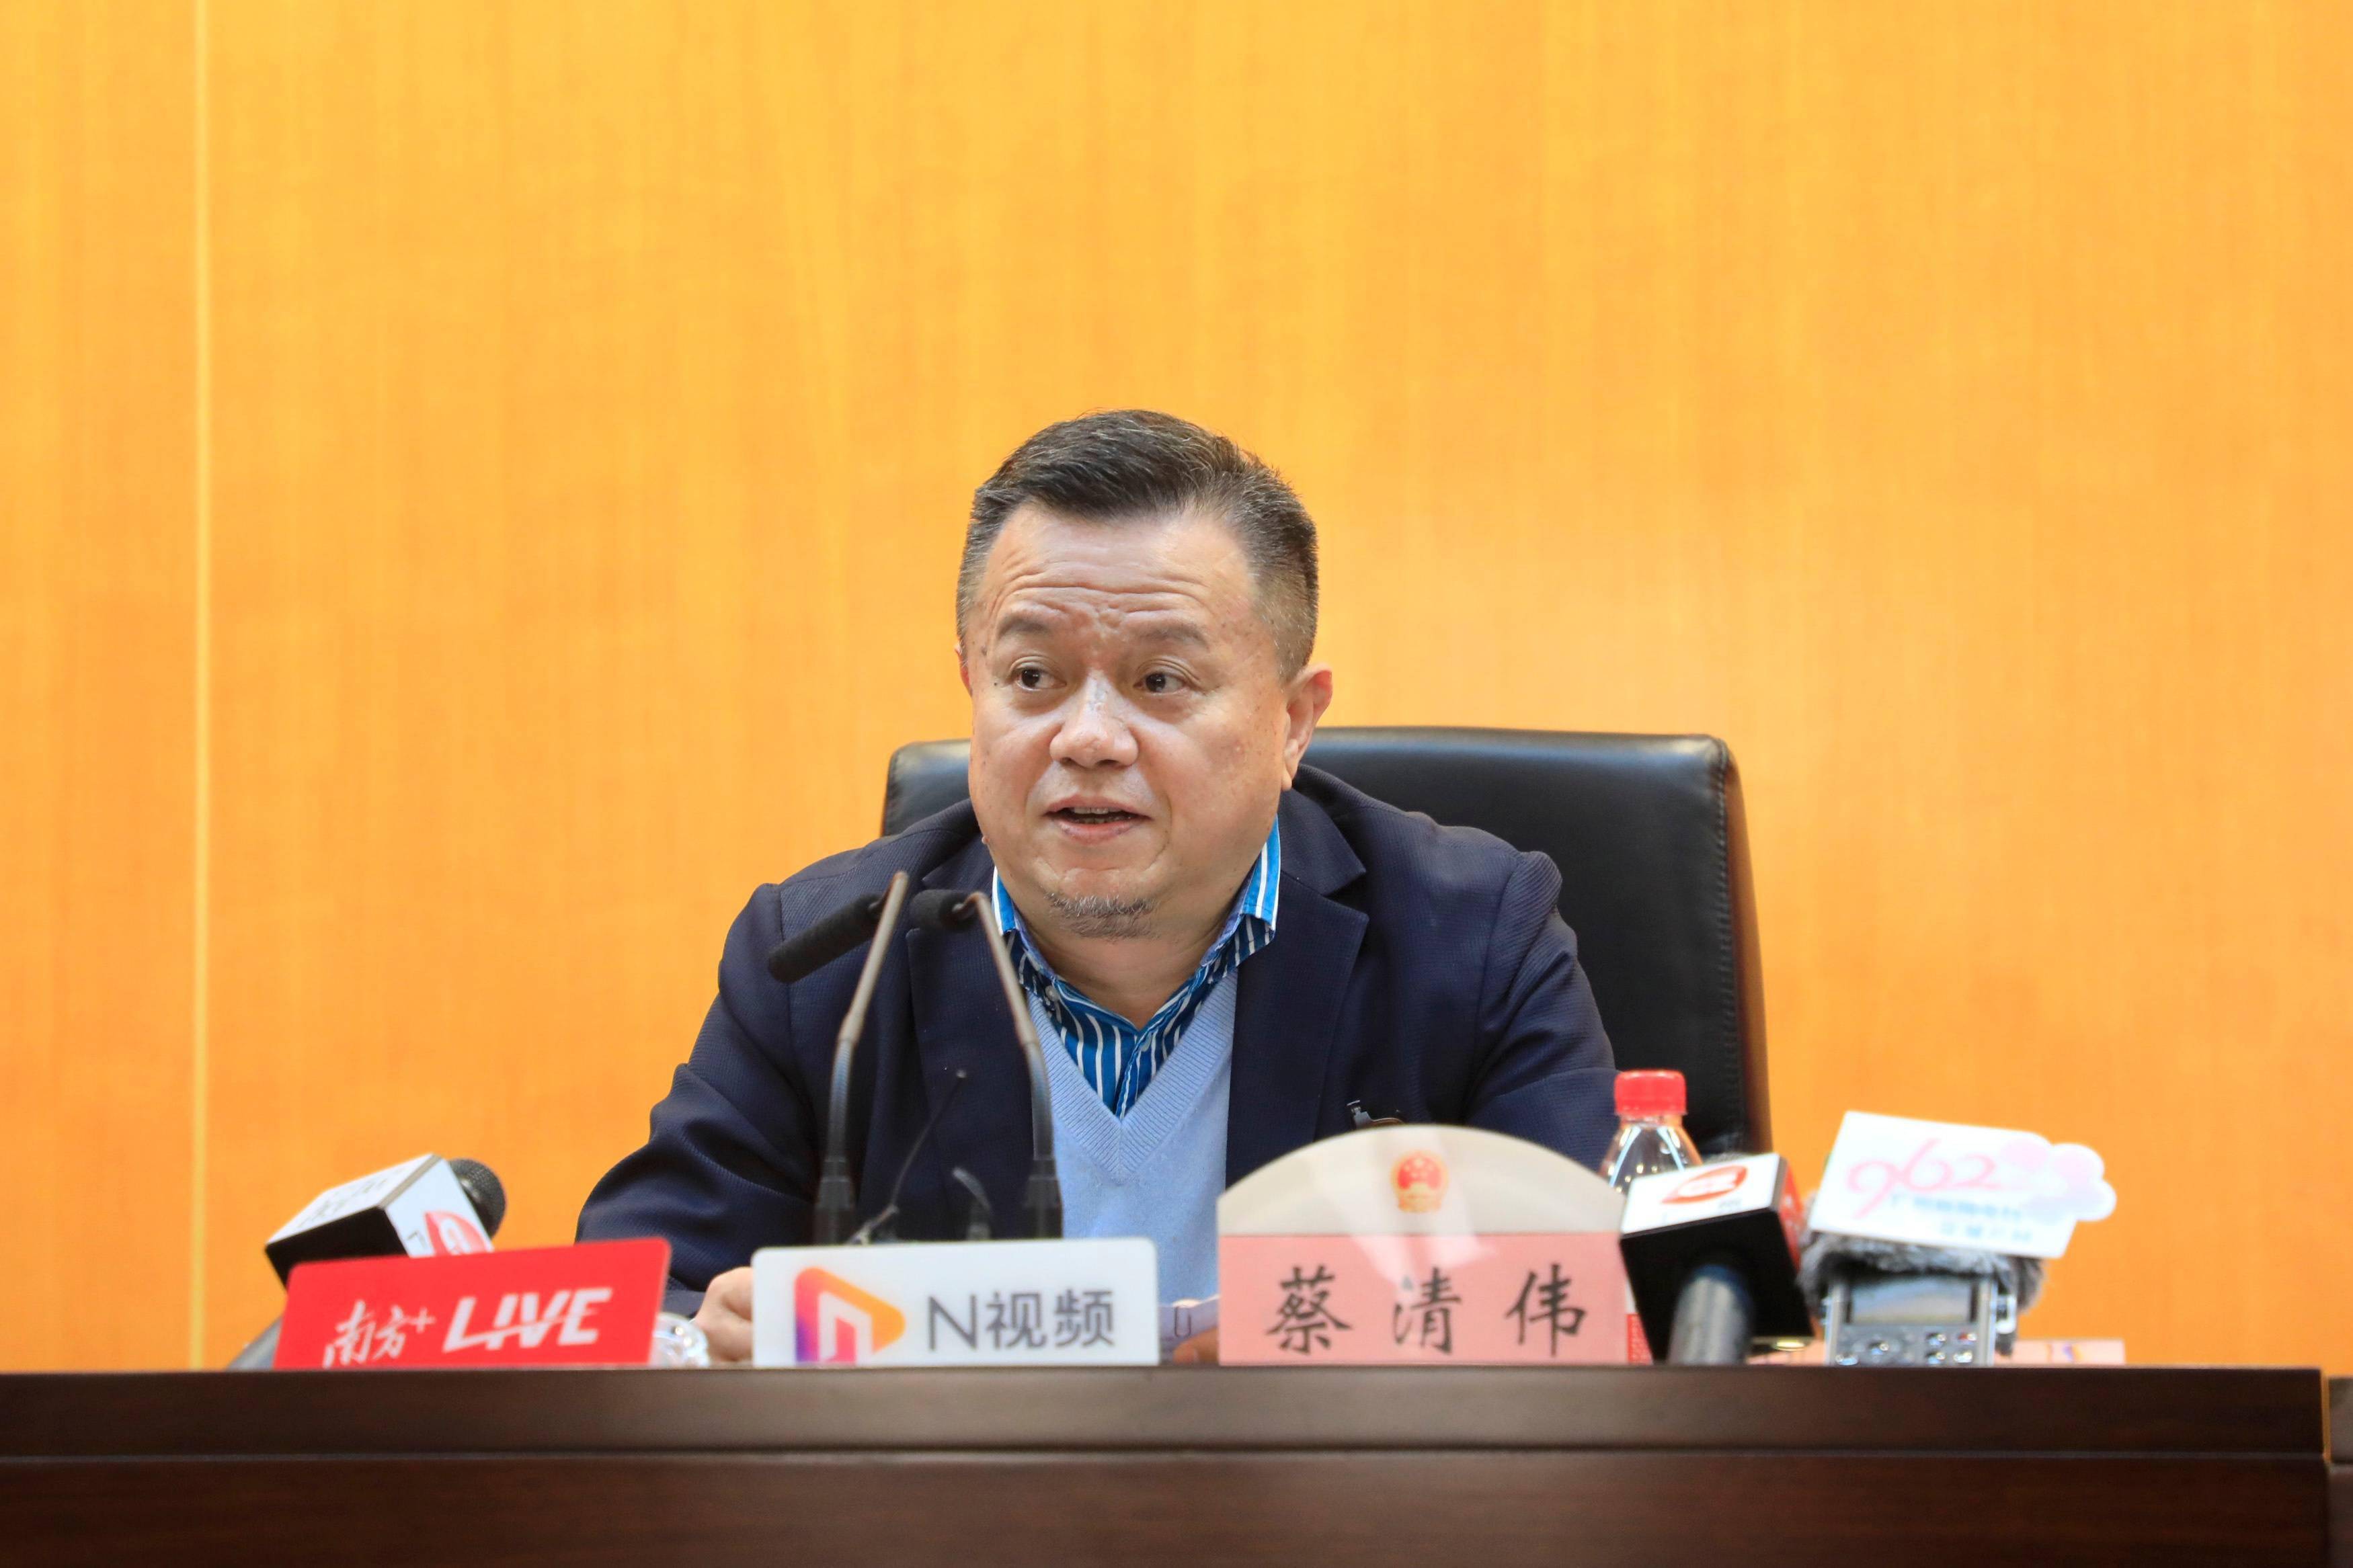 代表履职蔡清伟应把广州打造成中国数字经济商贸的第一出海口